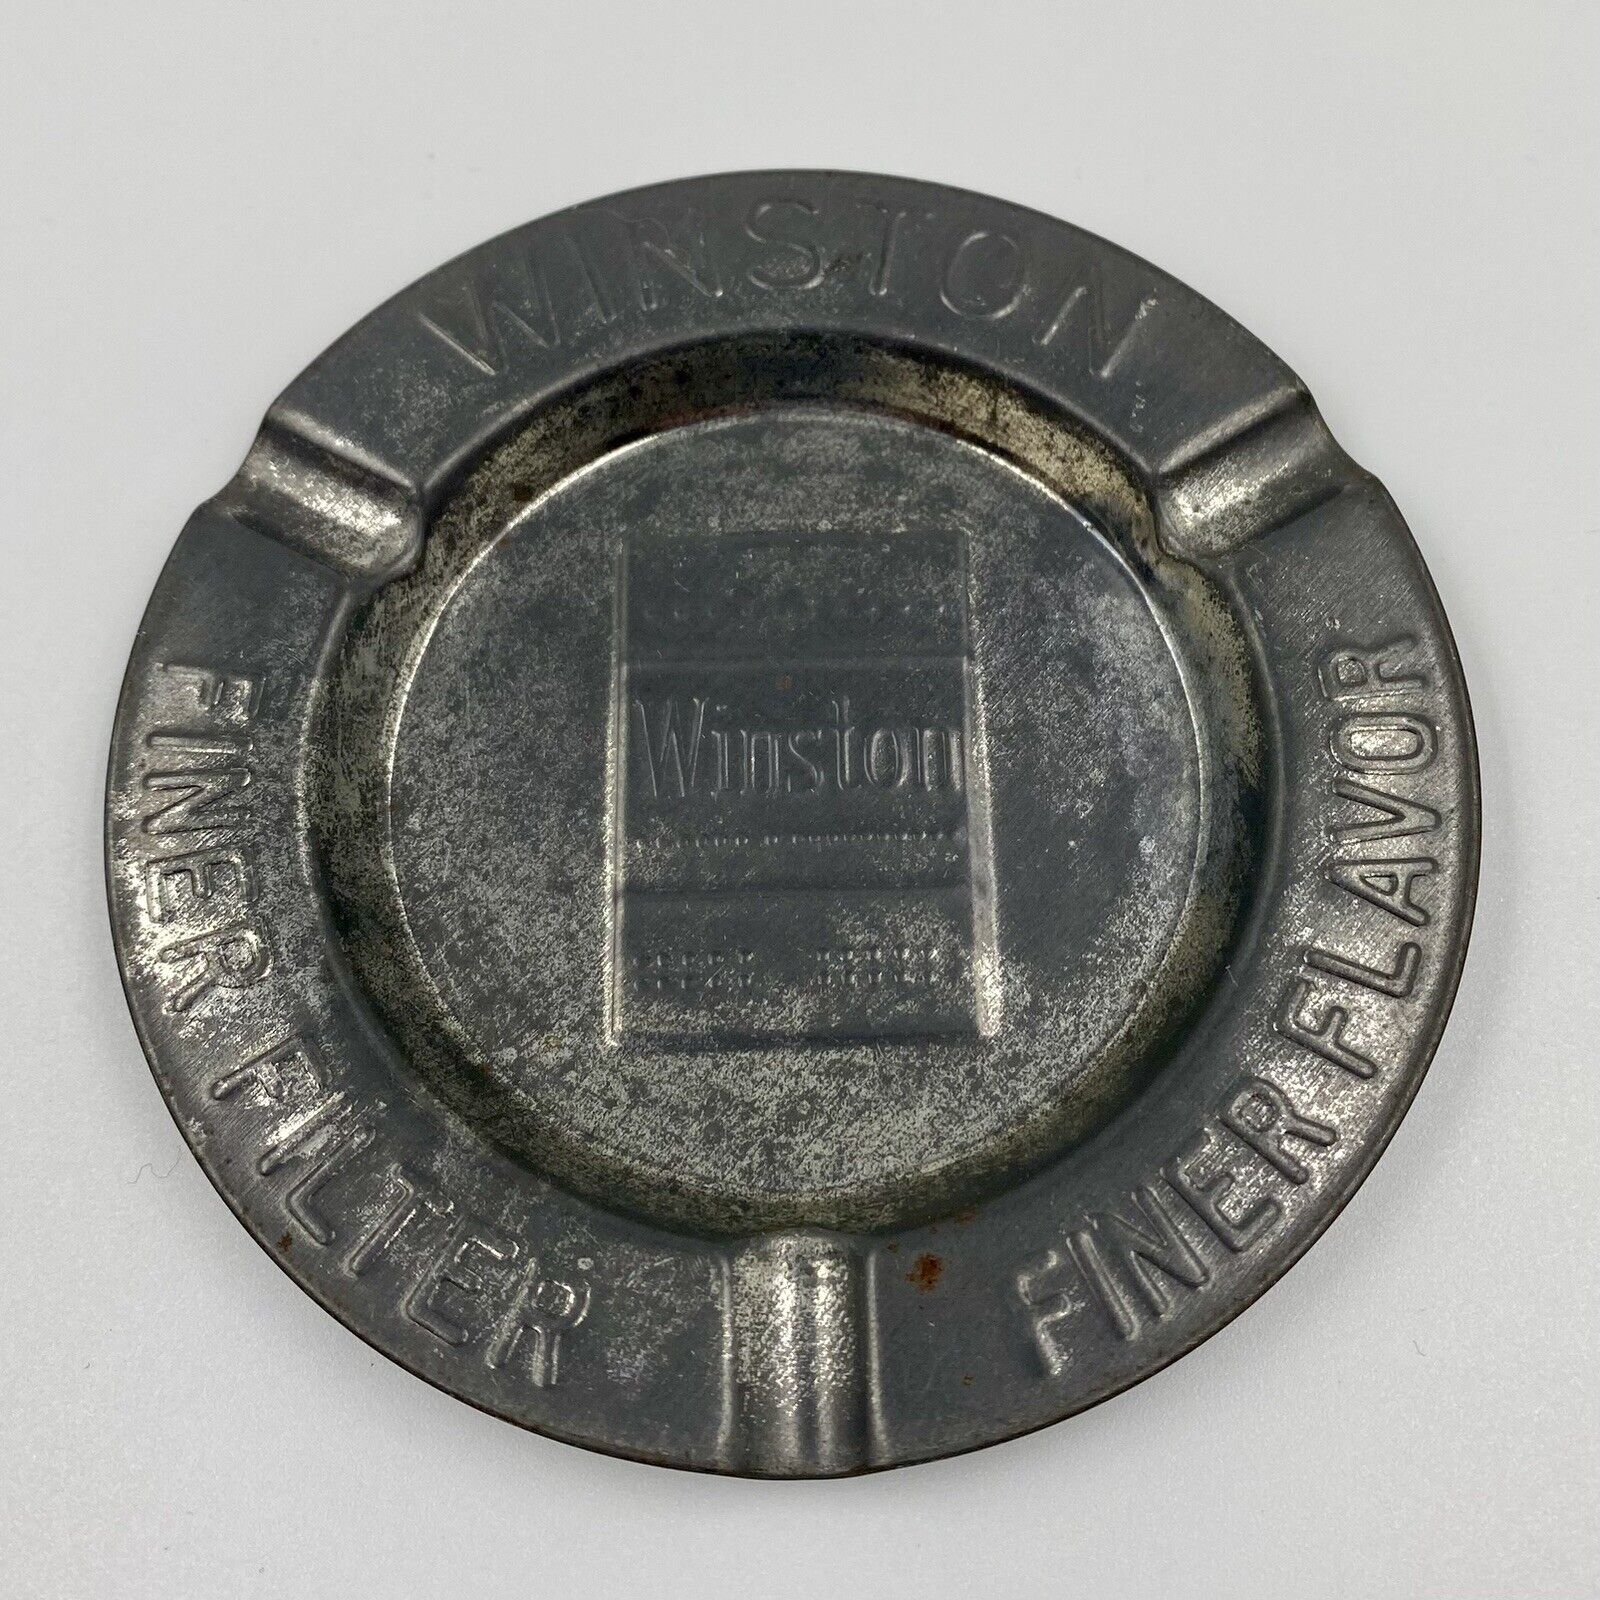 Vintage Winston Finer Filter Finer Flavor Stamped Metal Cigarette Ash Tray